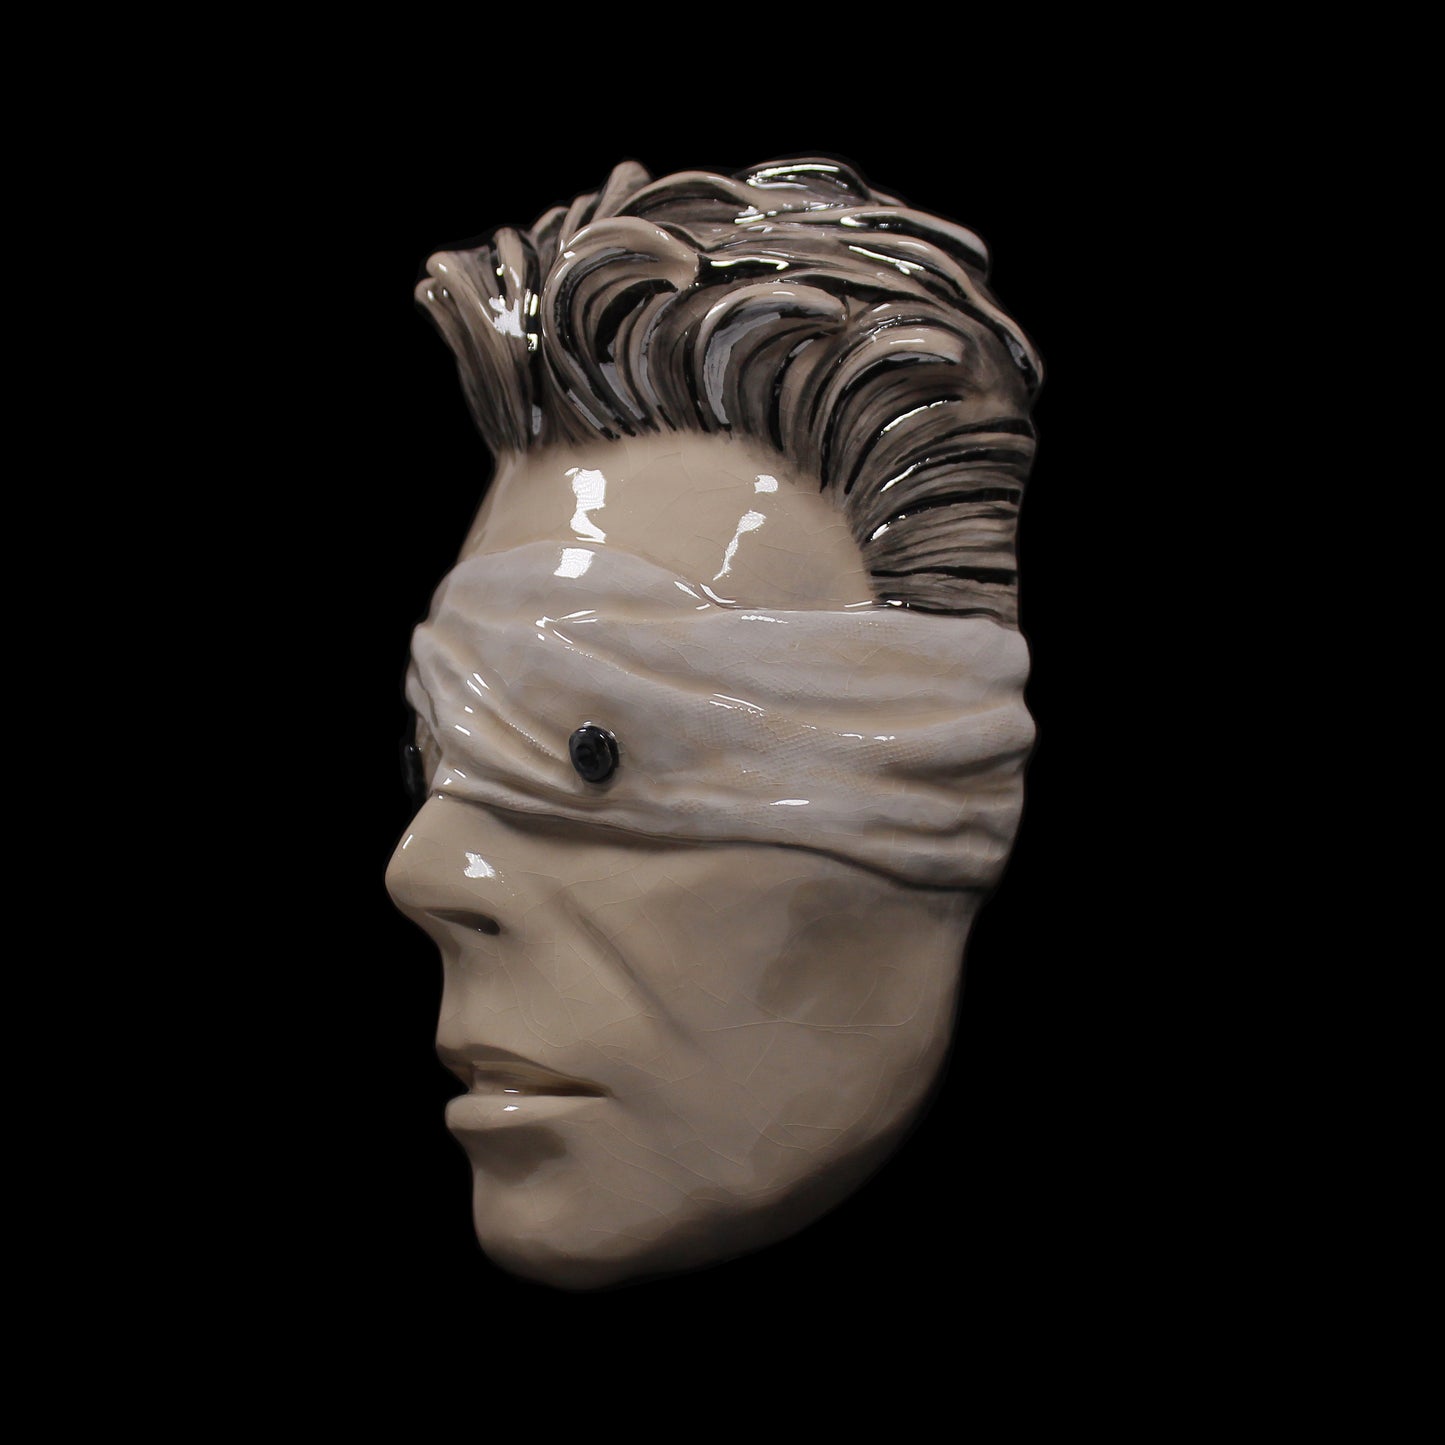 David Bowie - The Blind Prophet Painted Ceramic Sculpture